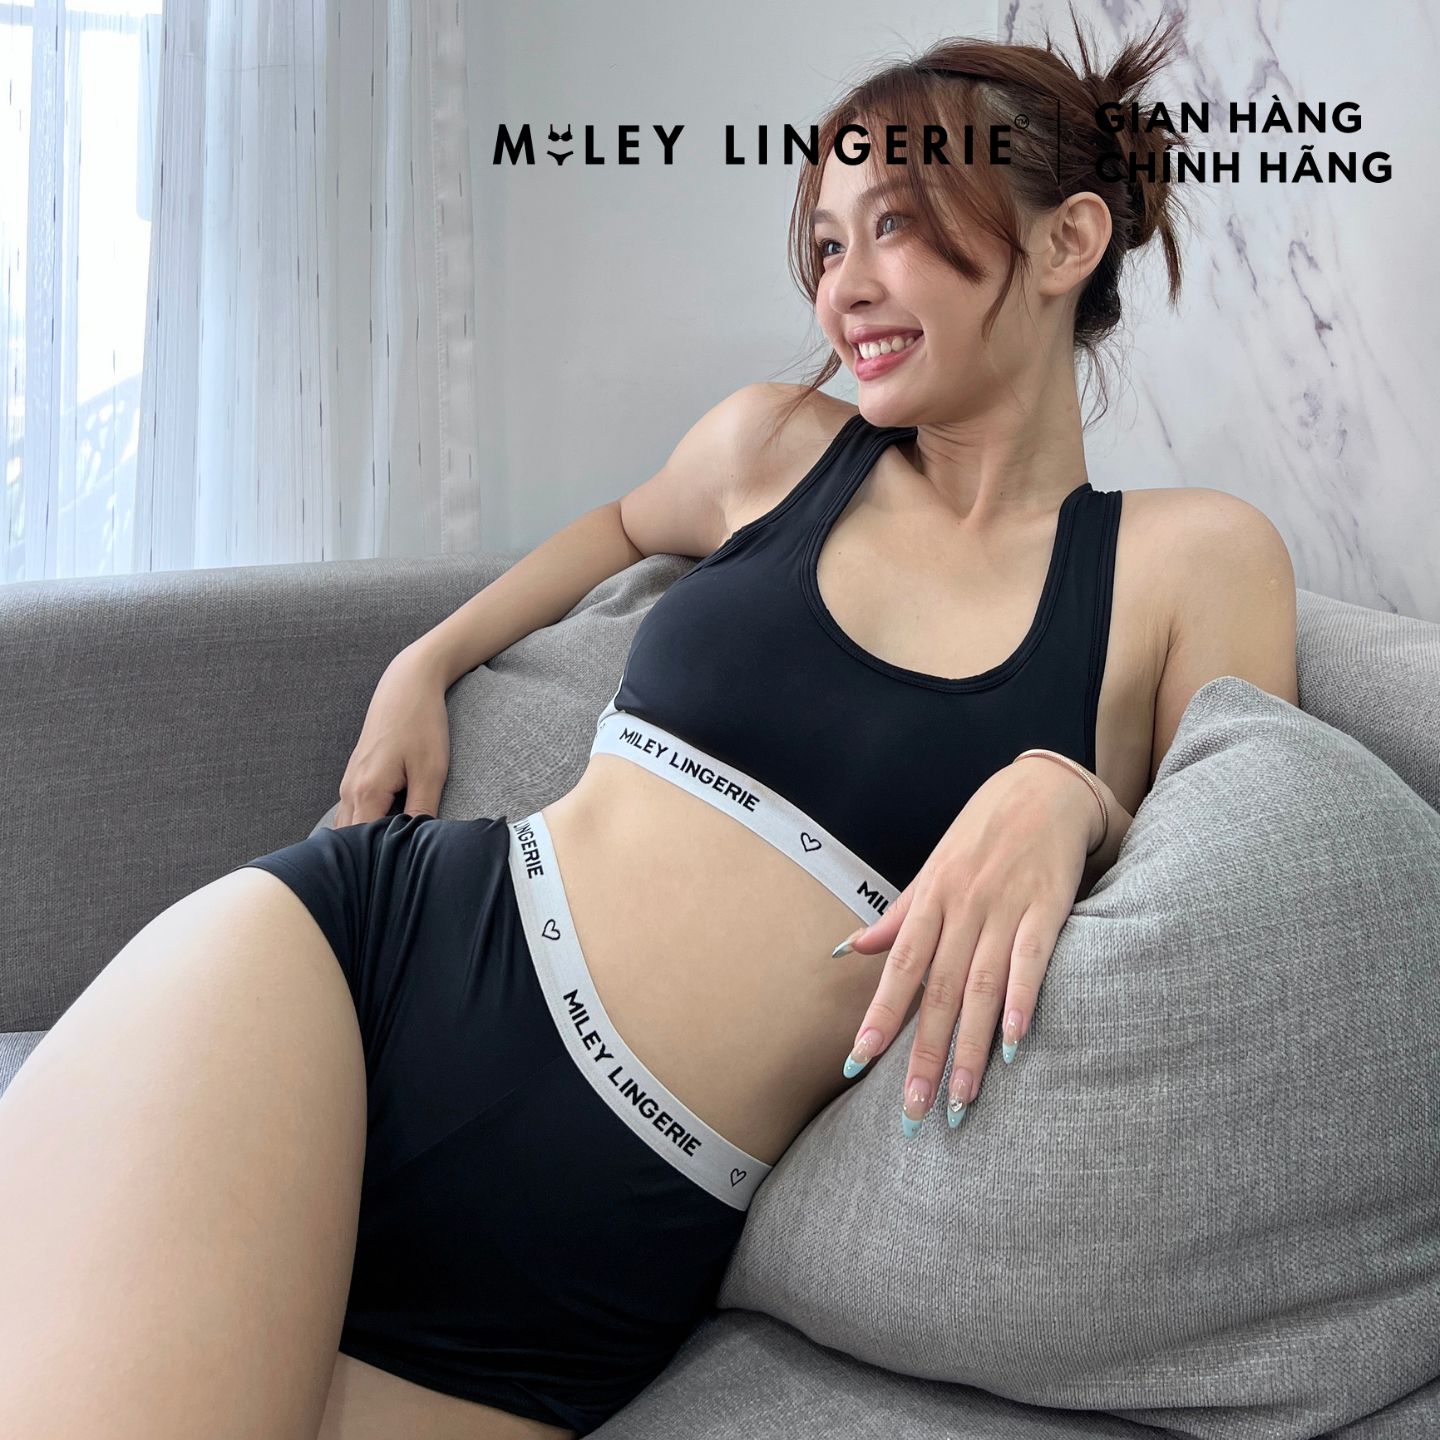 Bộ Đồ Lót Thể Thao Thun Lạnh Cao Cấp Miley Lingerie - SBS0104